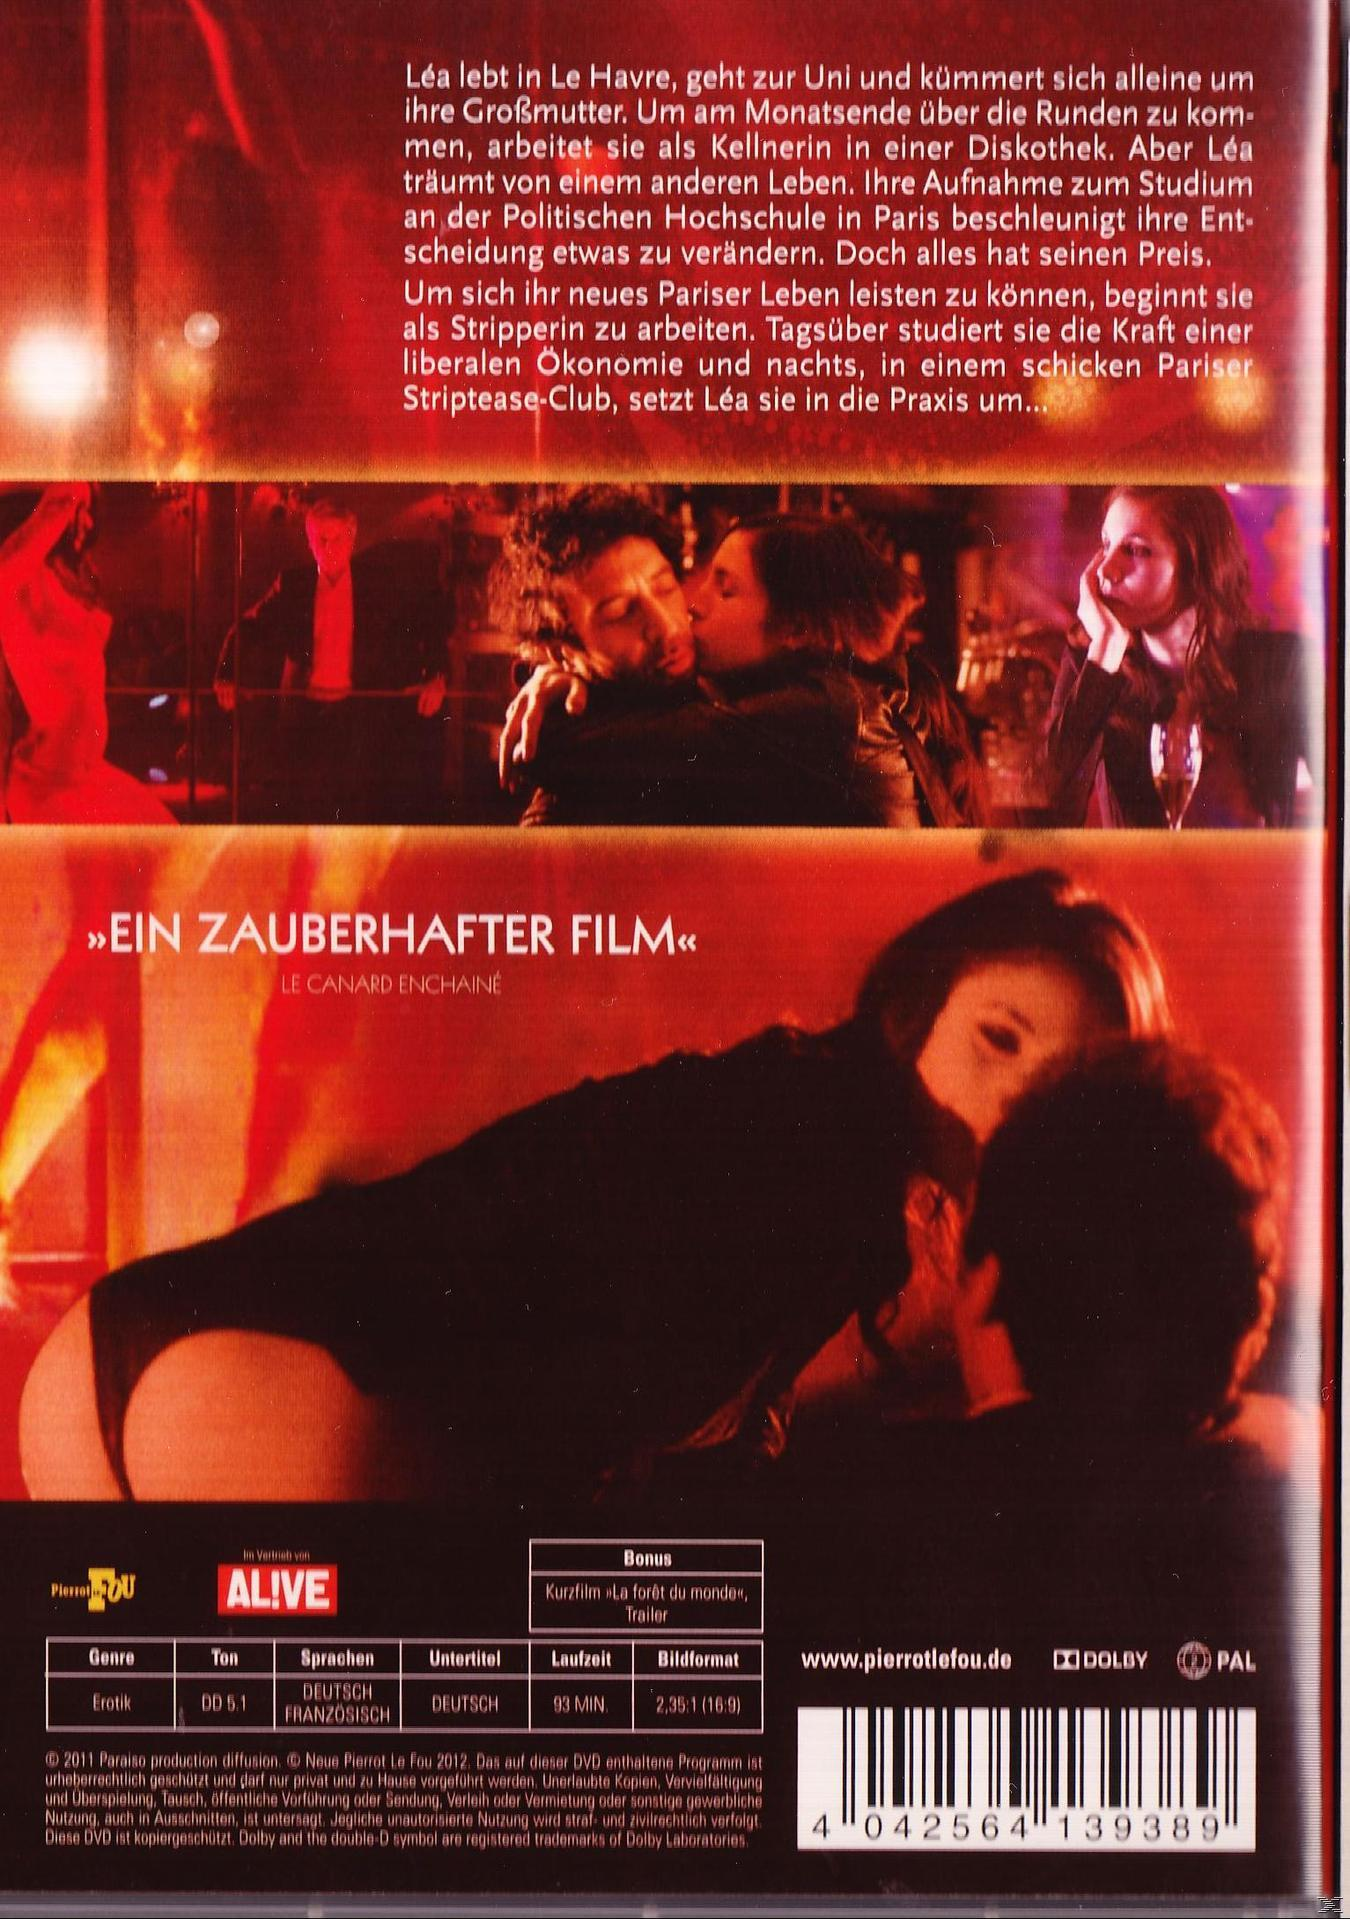 Lea - Die strippende Studentin DVD